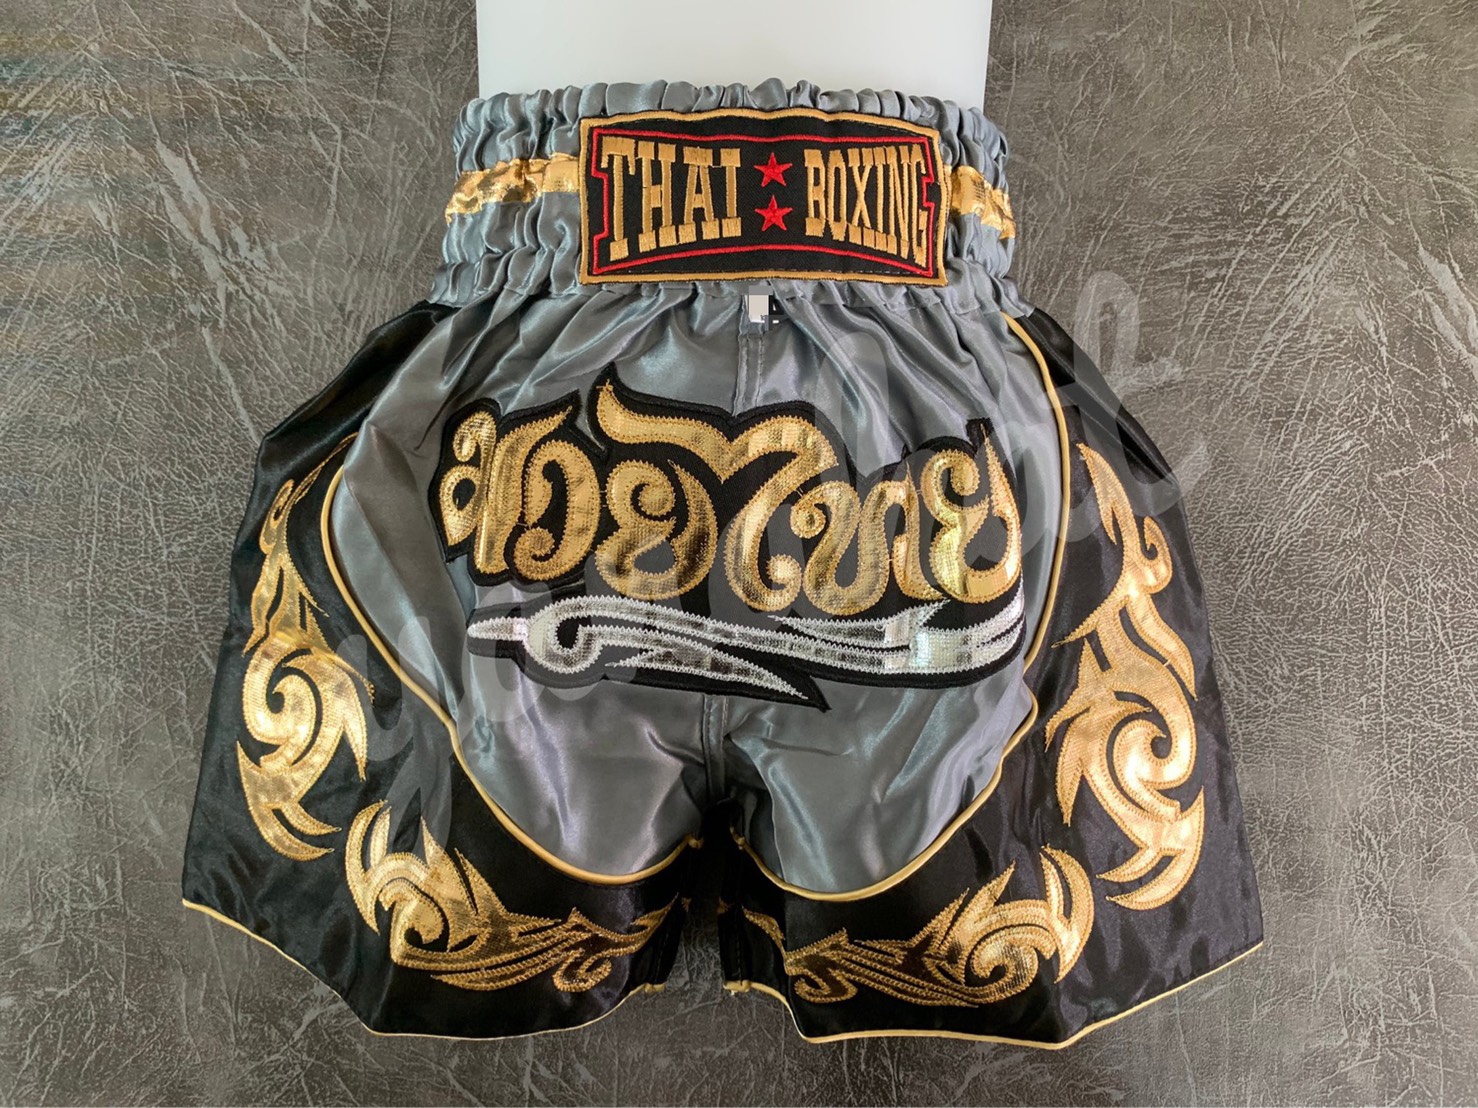 กางเกงมวย กางเกงมวยไทย ปักลายกนกทอง ไซส์ผู้ใหญ่ ผ้าซาติน Kick Boxing Shorts ไซส์ M-XXXL สีเทา